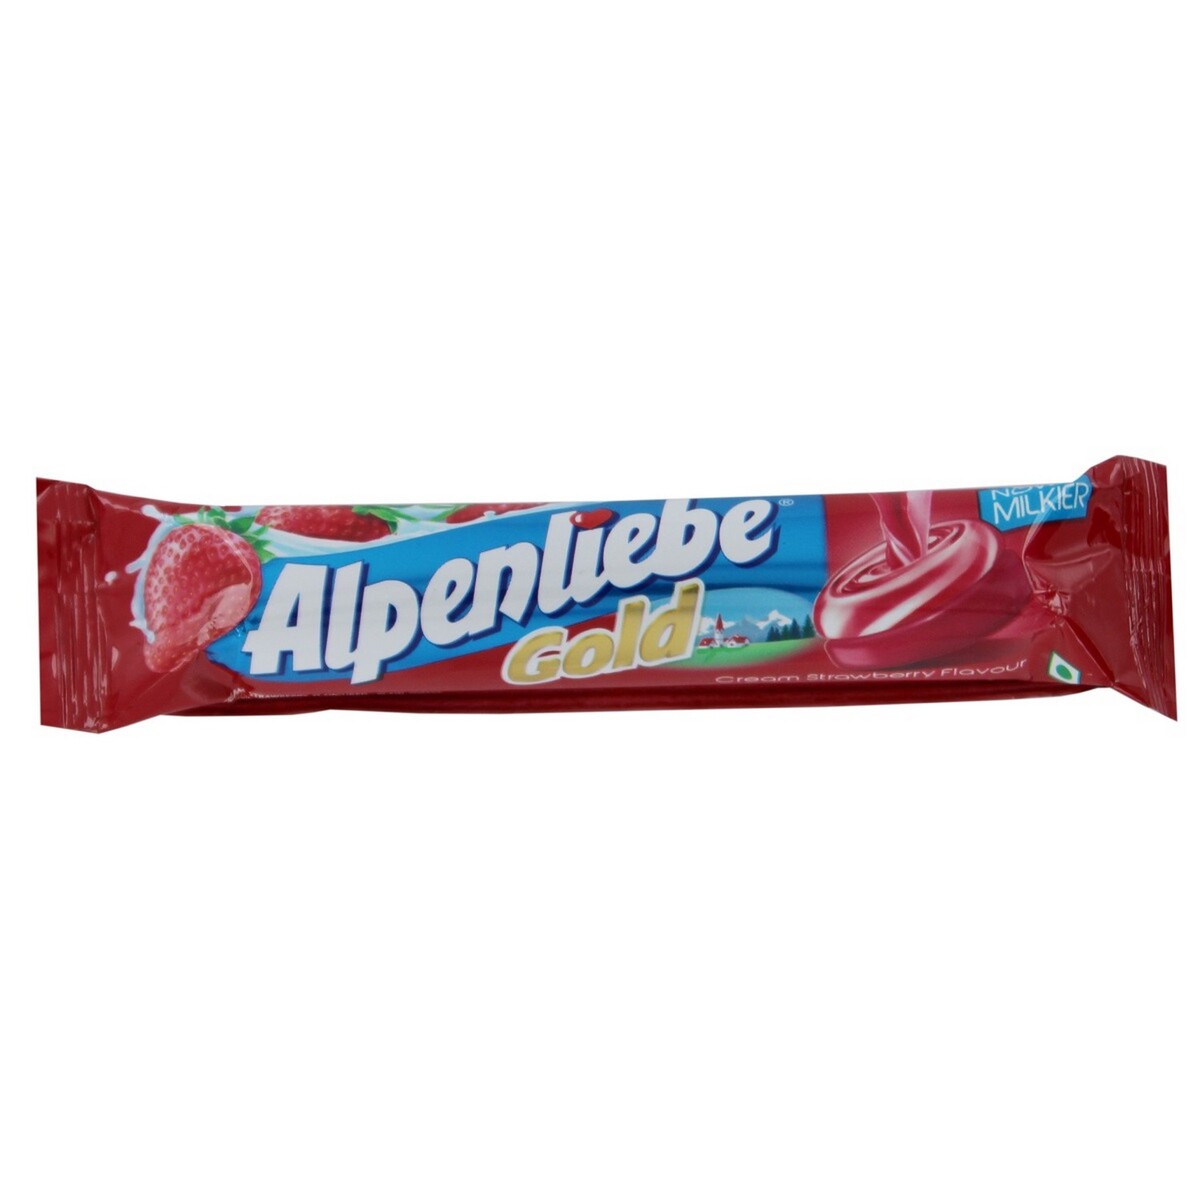 Alpenliebe Gold Cream Strawberry 30.6g